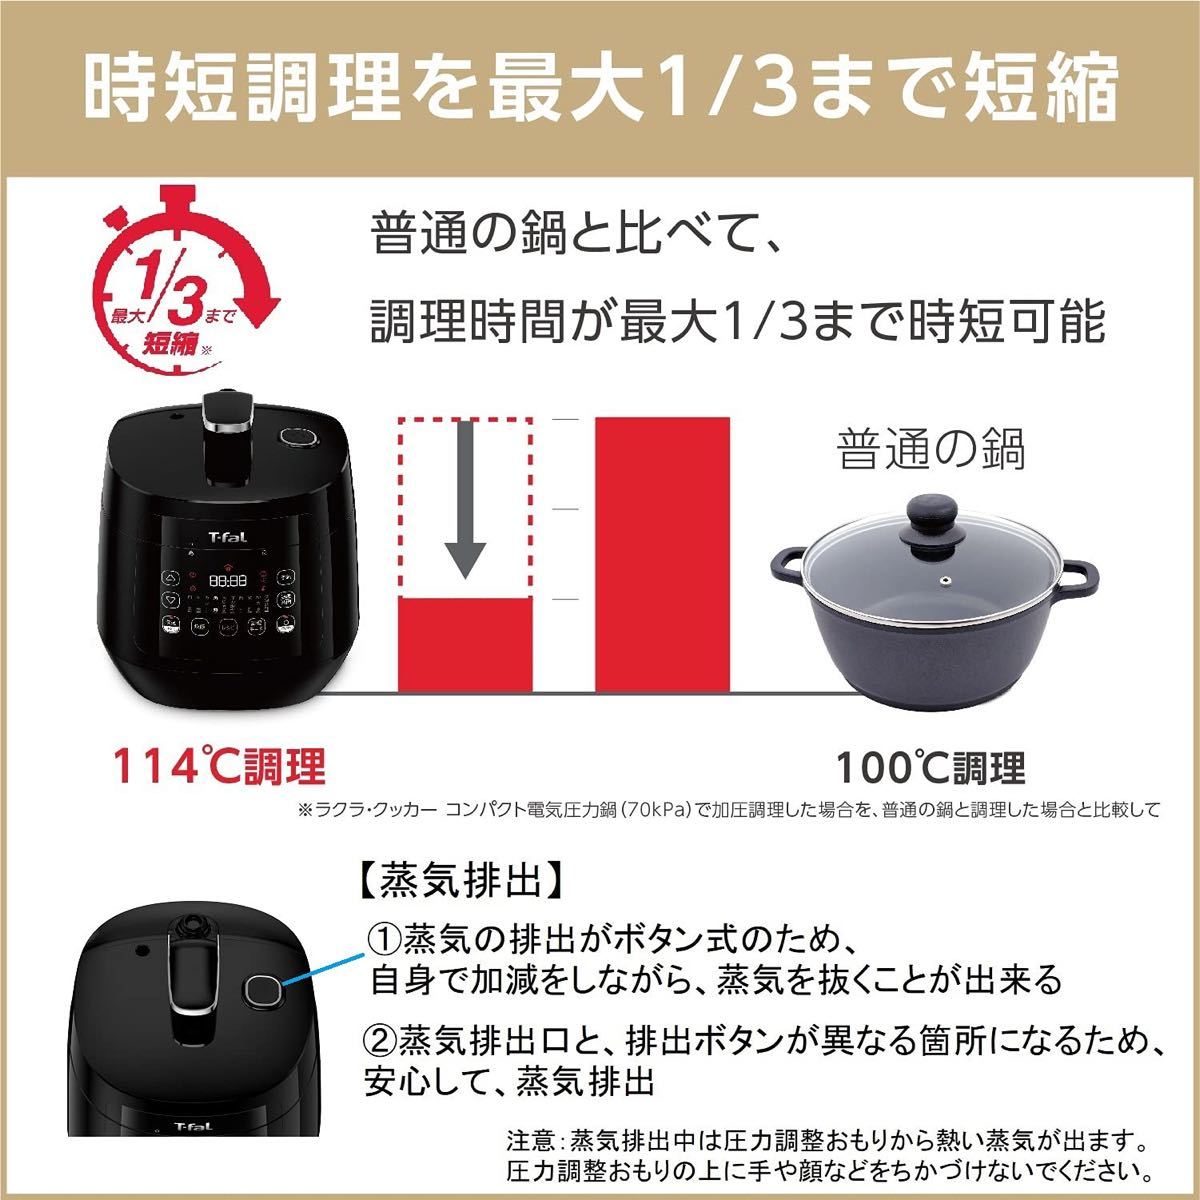 【新品未使用】ティファール 電気圧力鍋 ラクラクッカー コンパクト ブラック